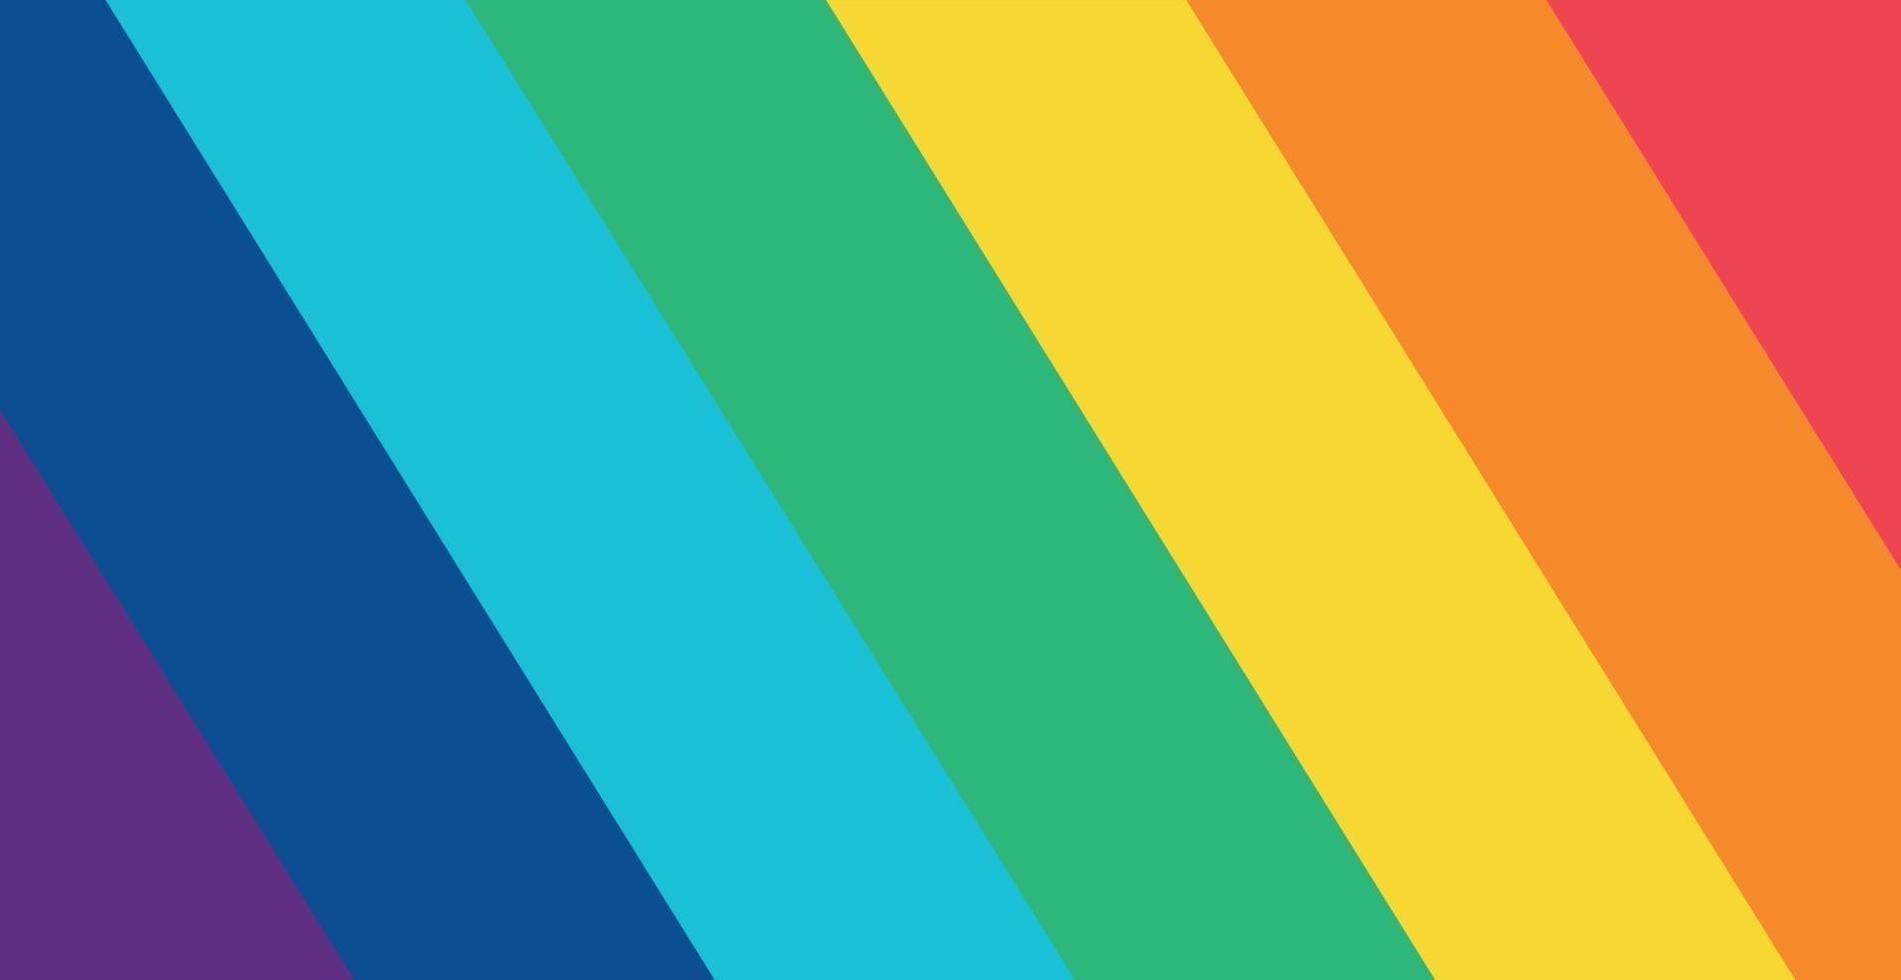 Couleurs arc-en-ciel multicolores abstraites, 7 nuances - illustration vectorielle vecteur